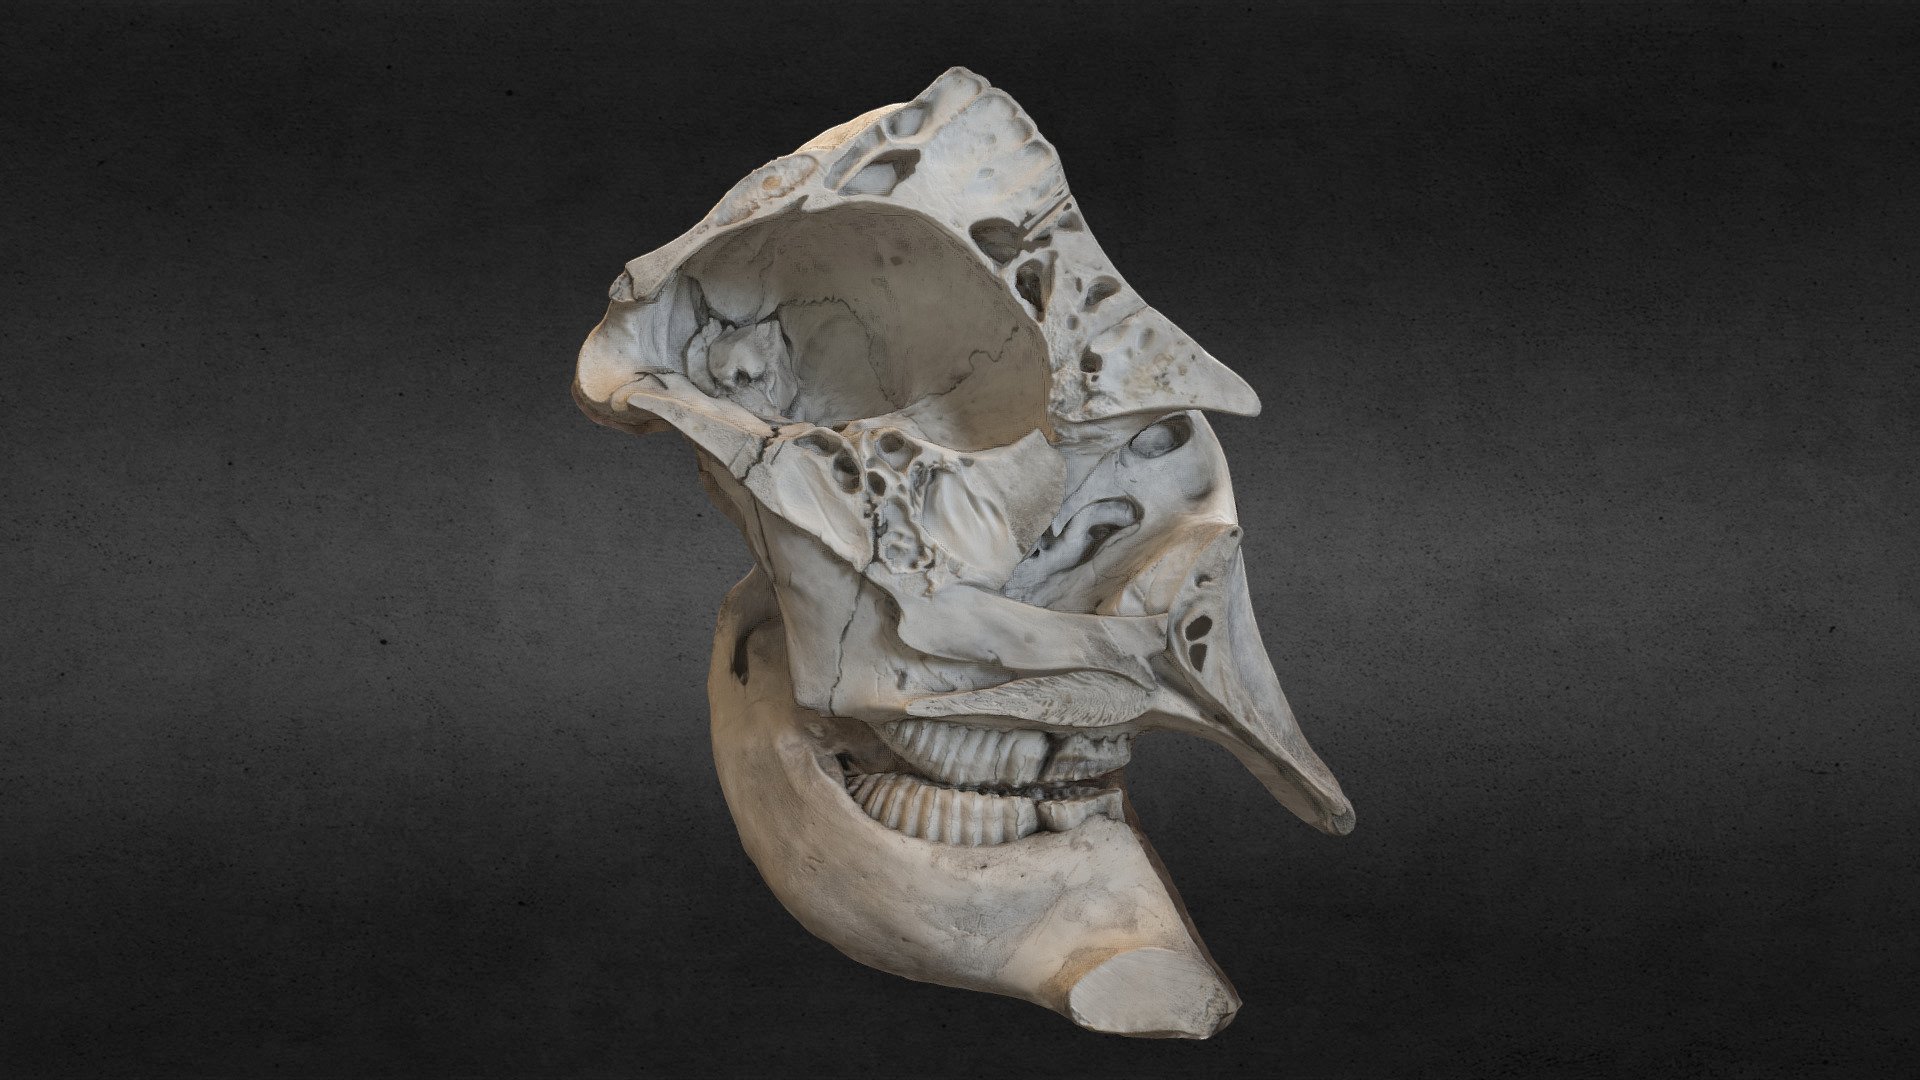 Museum National d'Histoire Naturelle, Paris, France. Asian Elephant.

3D scanned using Agisoft Photoscan 3d model